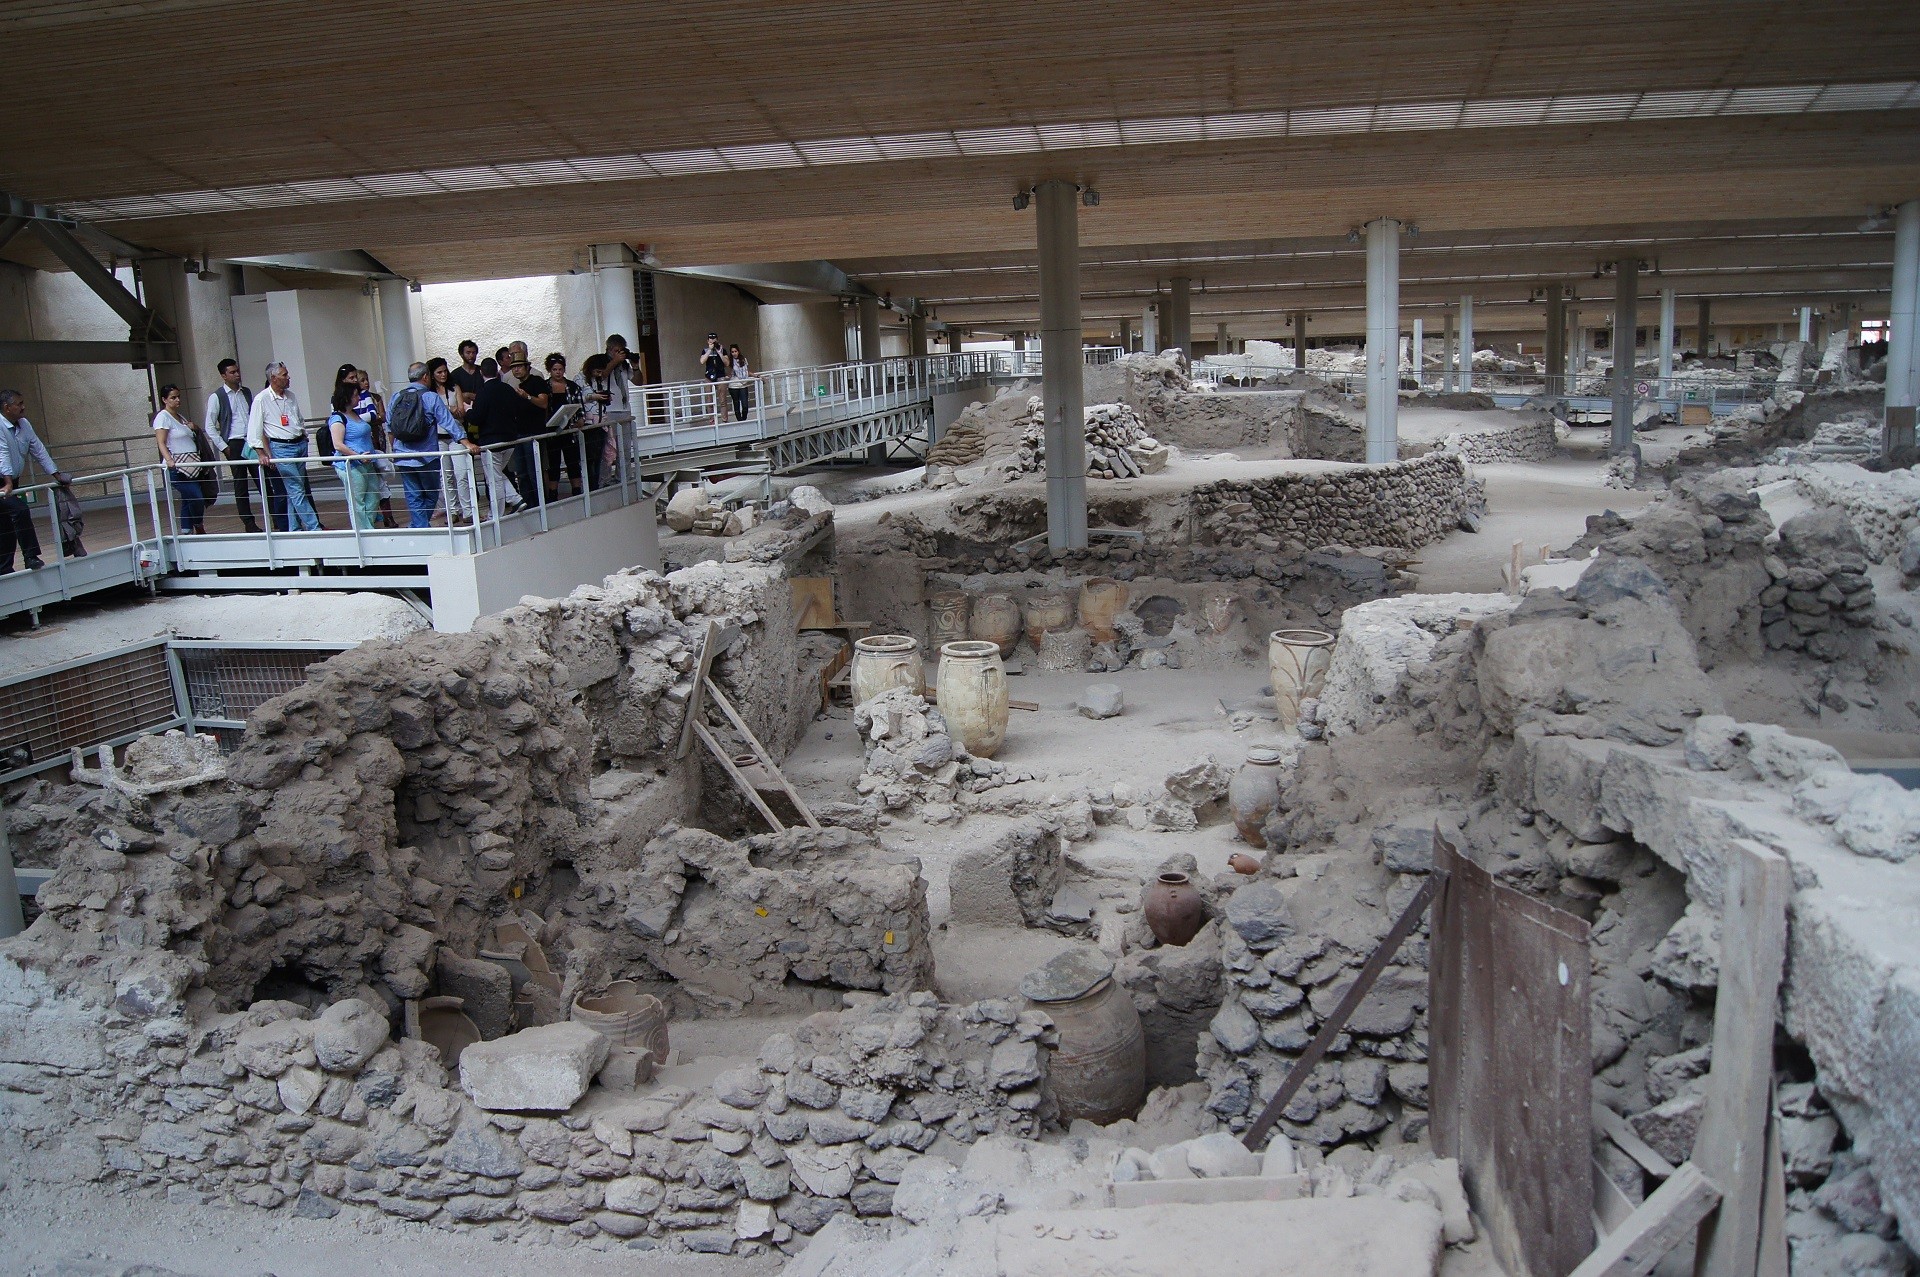 turyści oglądający stanowisko archeologiczne z ruinami kamiennych domów z wazami ceramicznymi